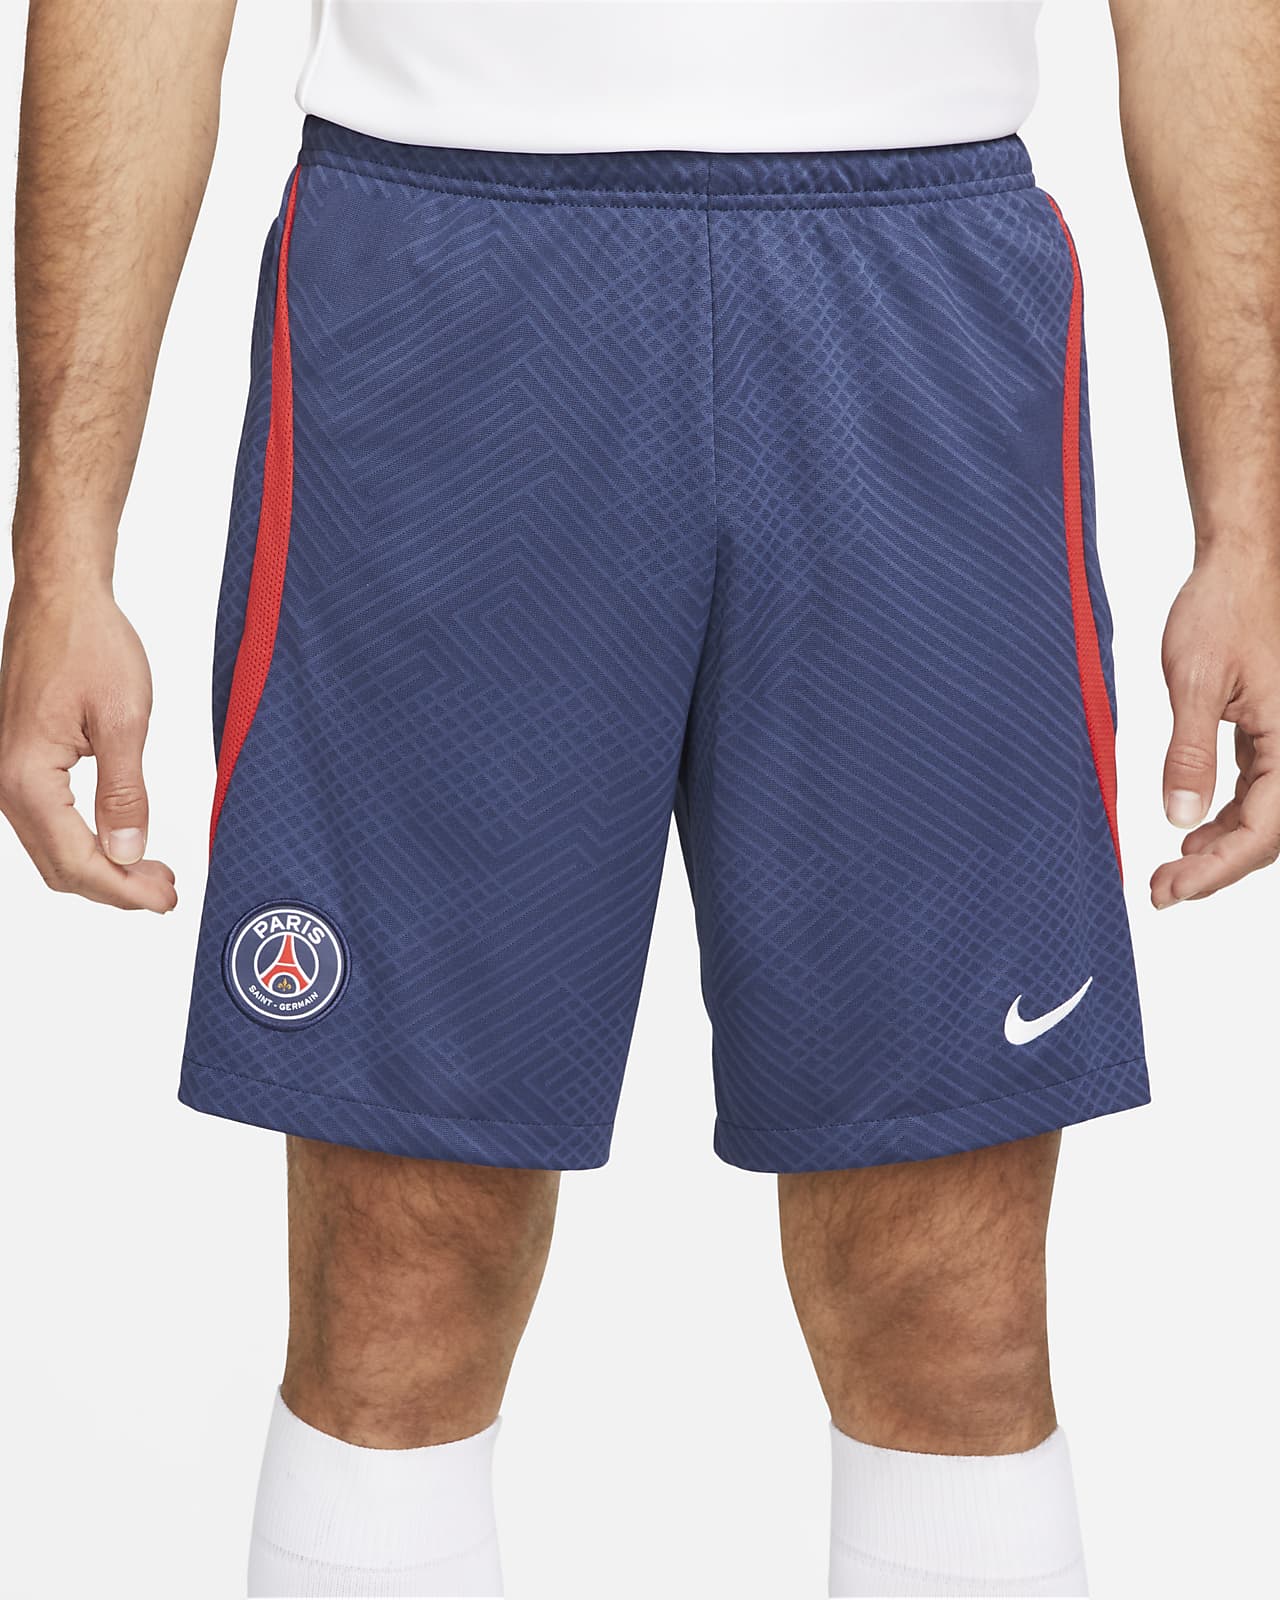 Paris Saint-Germain Strike Men's Nike Dri-FIT Soccer Shorts.